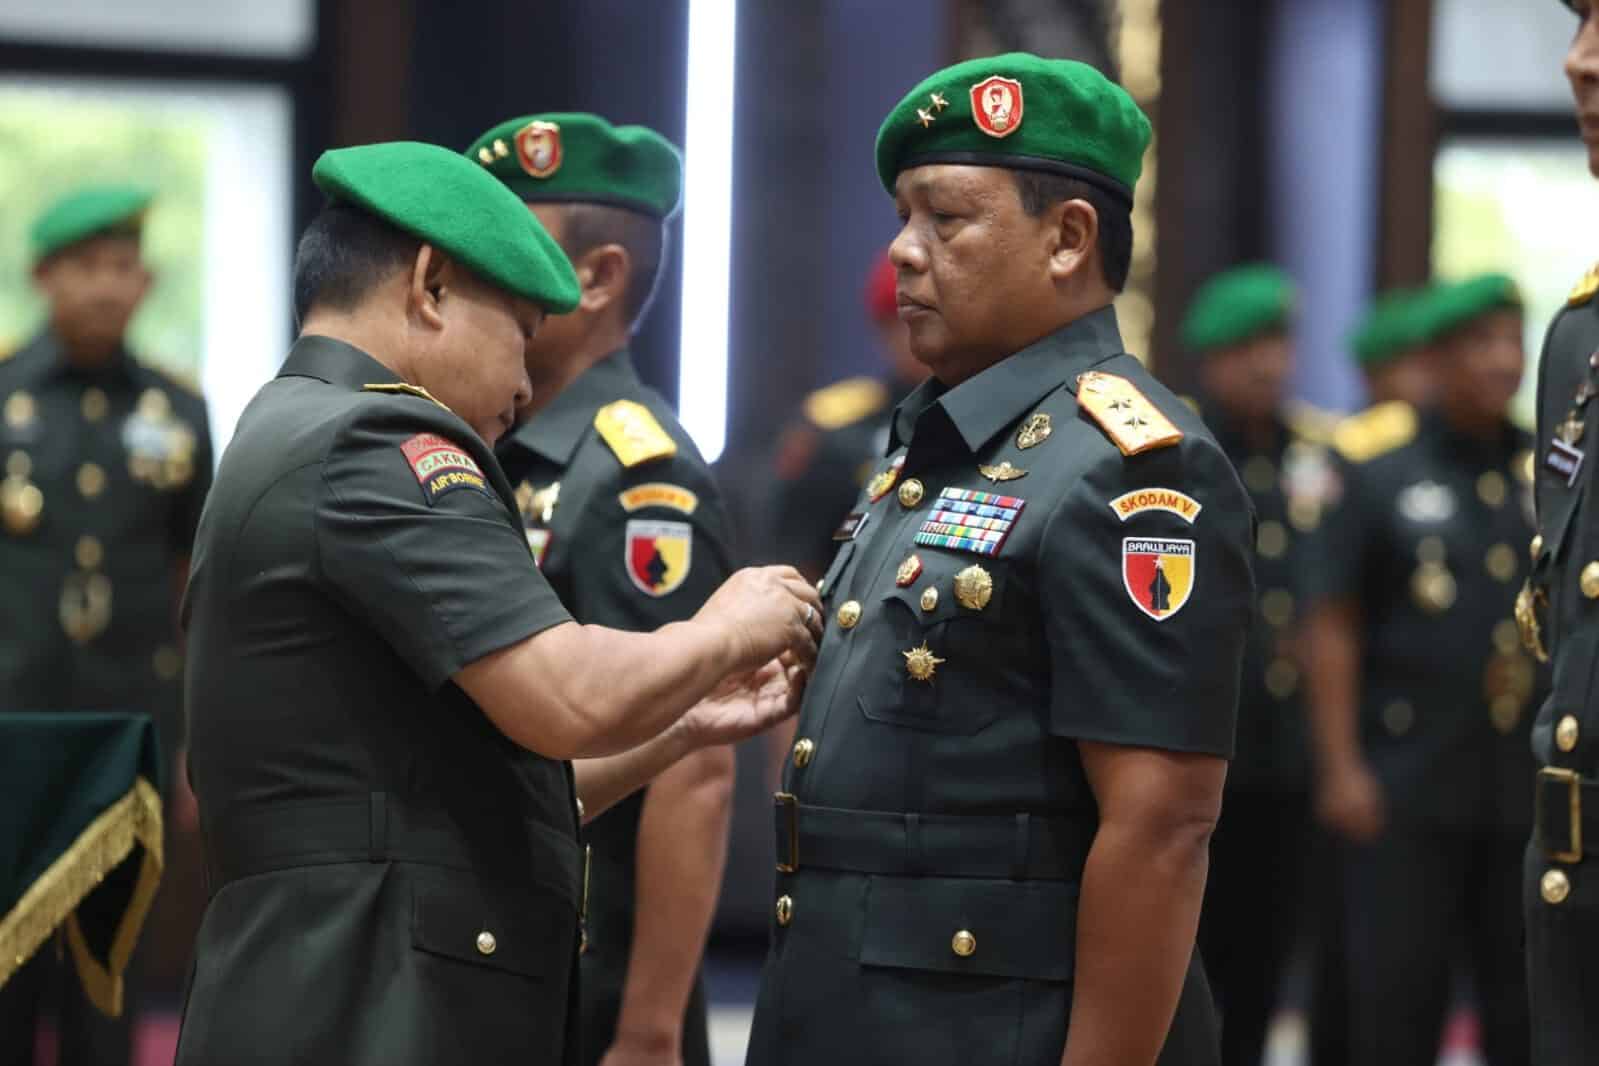 Jabatan Pangdam V Brawijaya Resmi Diserahterimakan kepada Mayjen TNI Farid Makruf